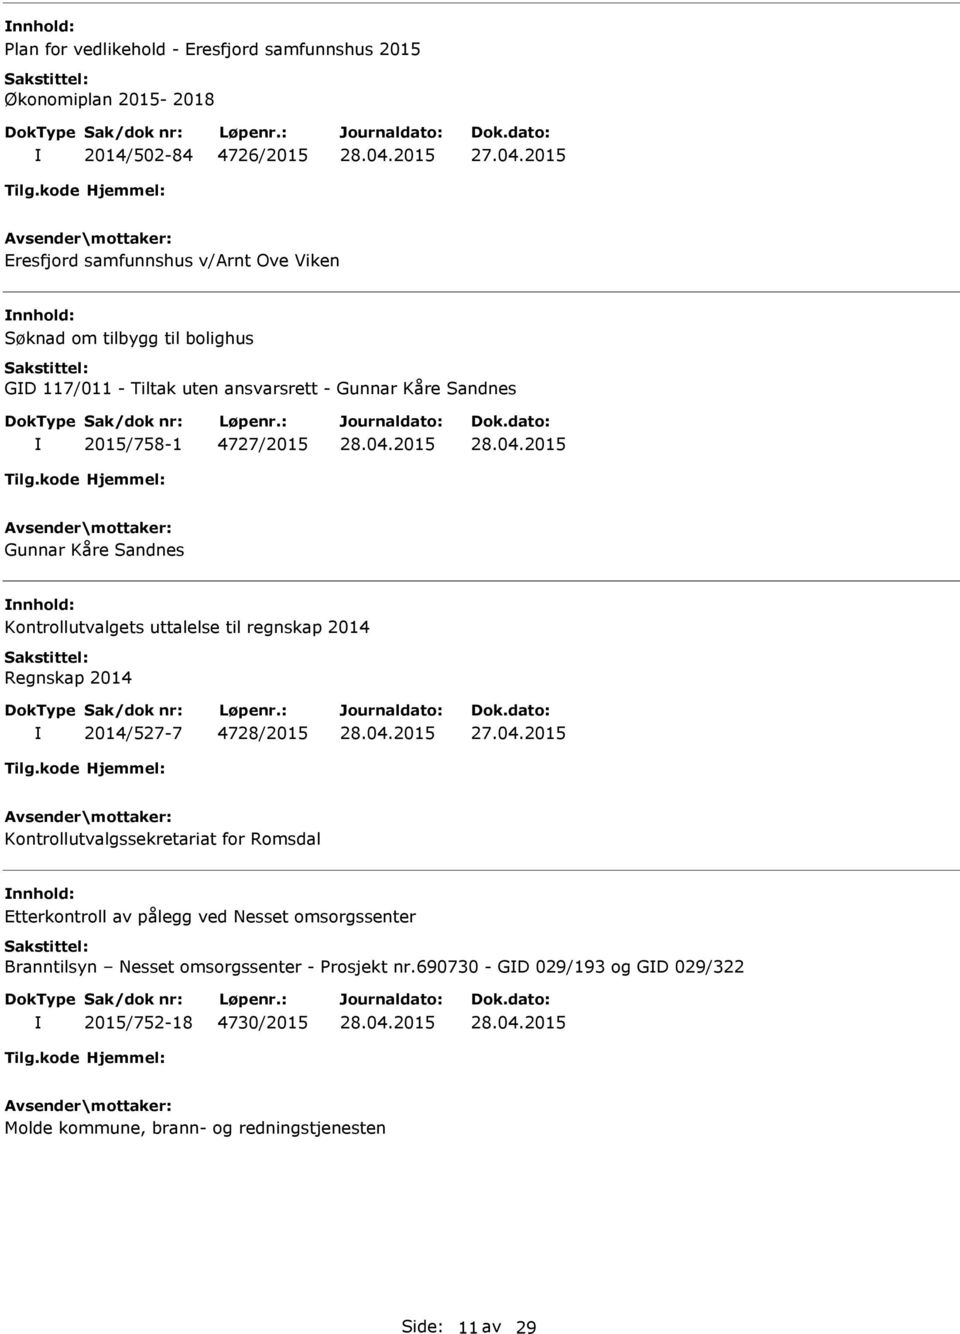 uttalelse til regnskap 2014 Regnskap 2014 2014/527-7 4728/2015 Kontrollutvalgssekretariat for Romsdal nnhold: Etterkontroll av pålegg ved Nesset